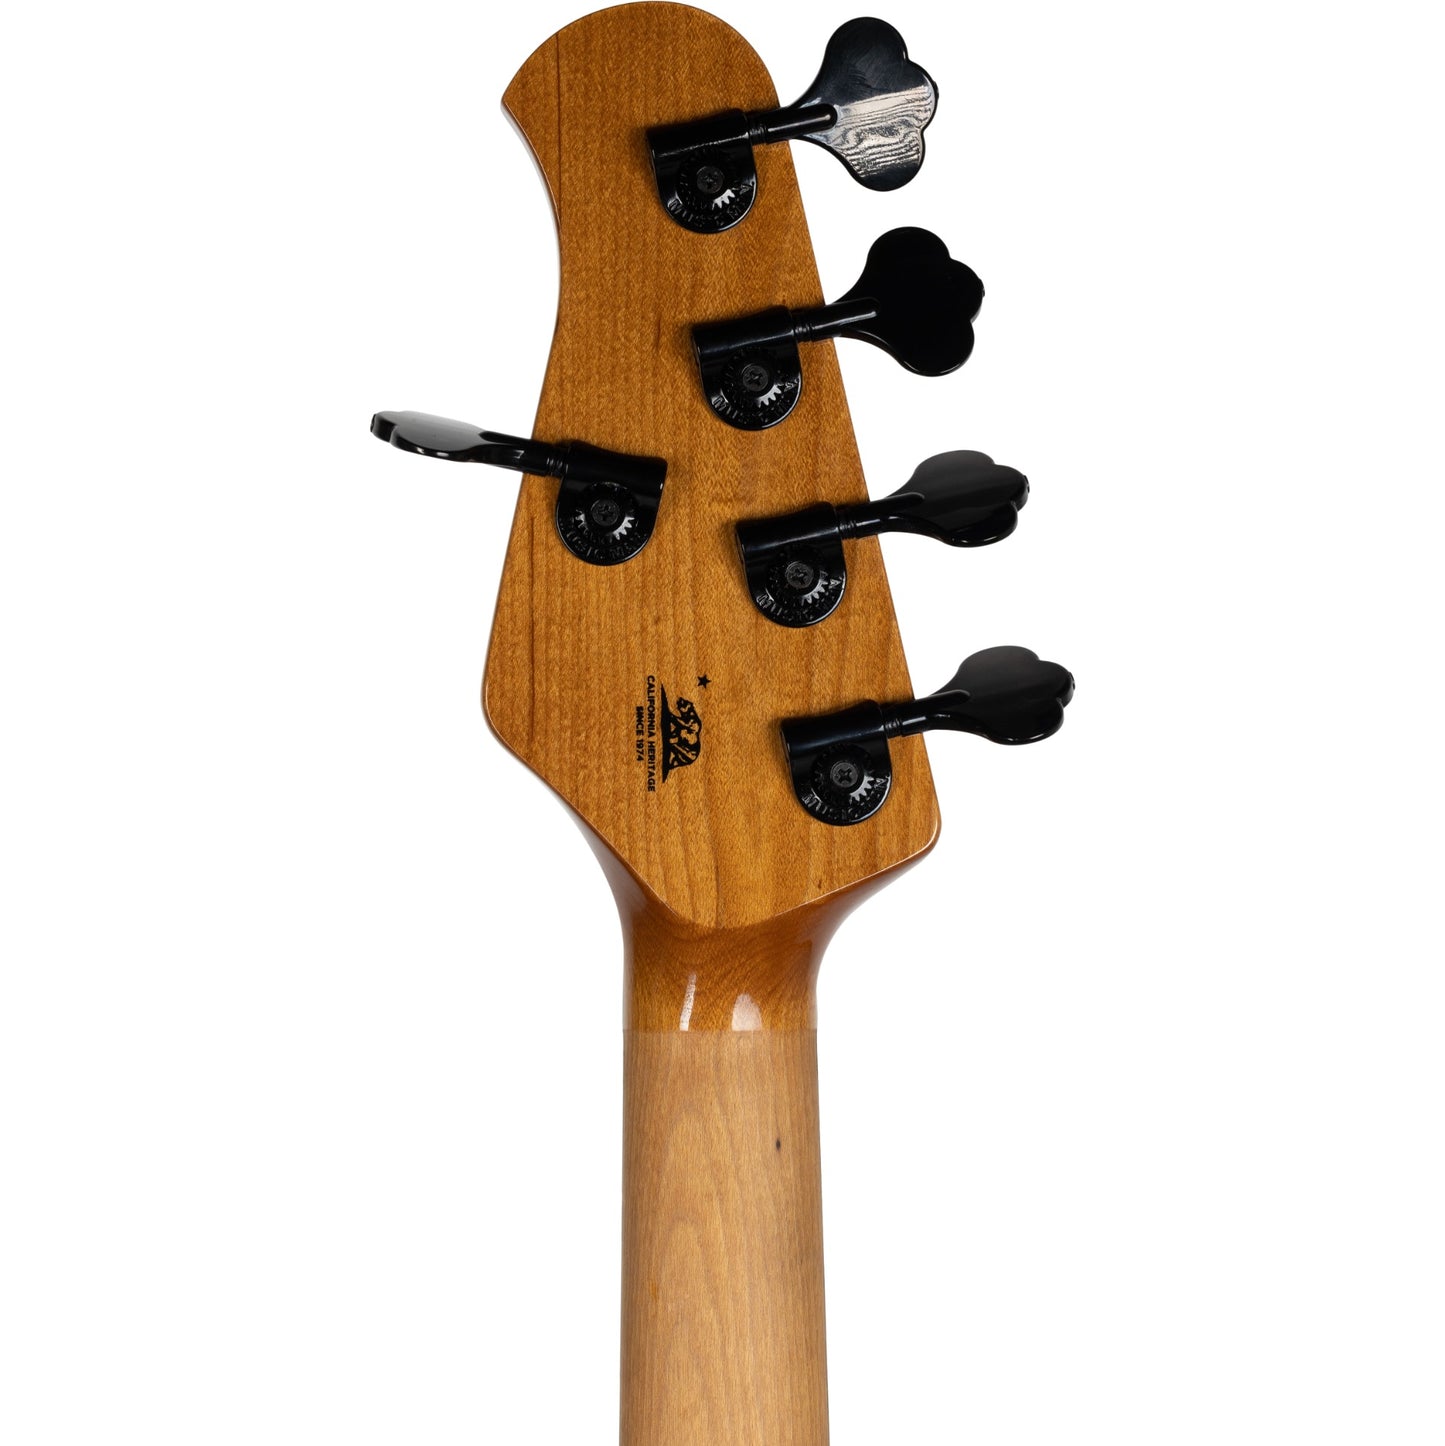 Ernie Ball Music Man StingRay Special 5HH Bass Guitar - Smoked Chrome